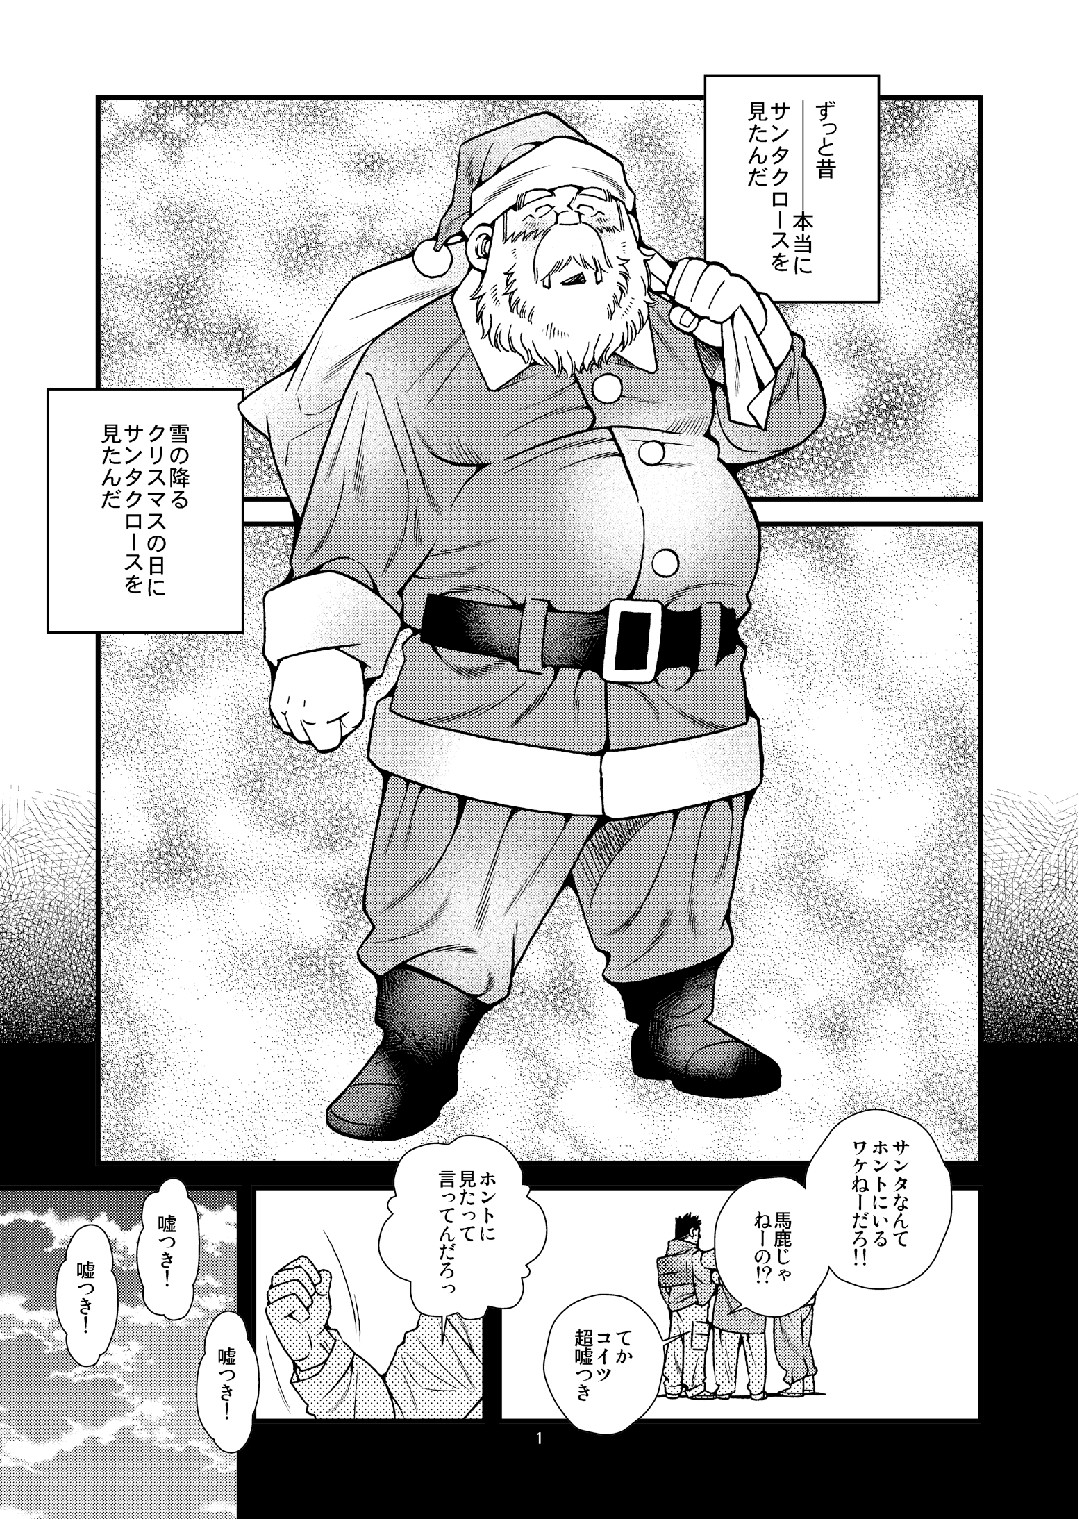 Manatsu ni Santa ga Yattekita - Santa Claus in Summer